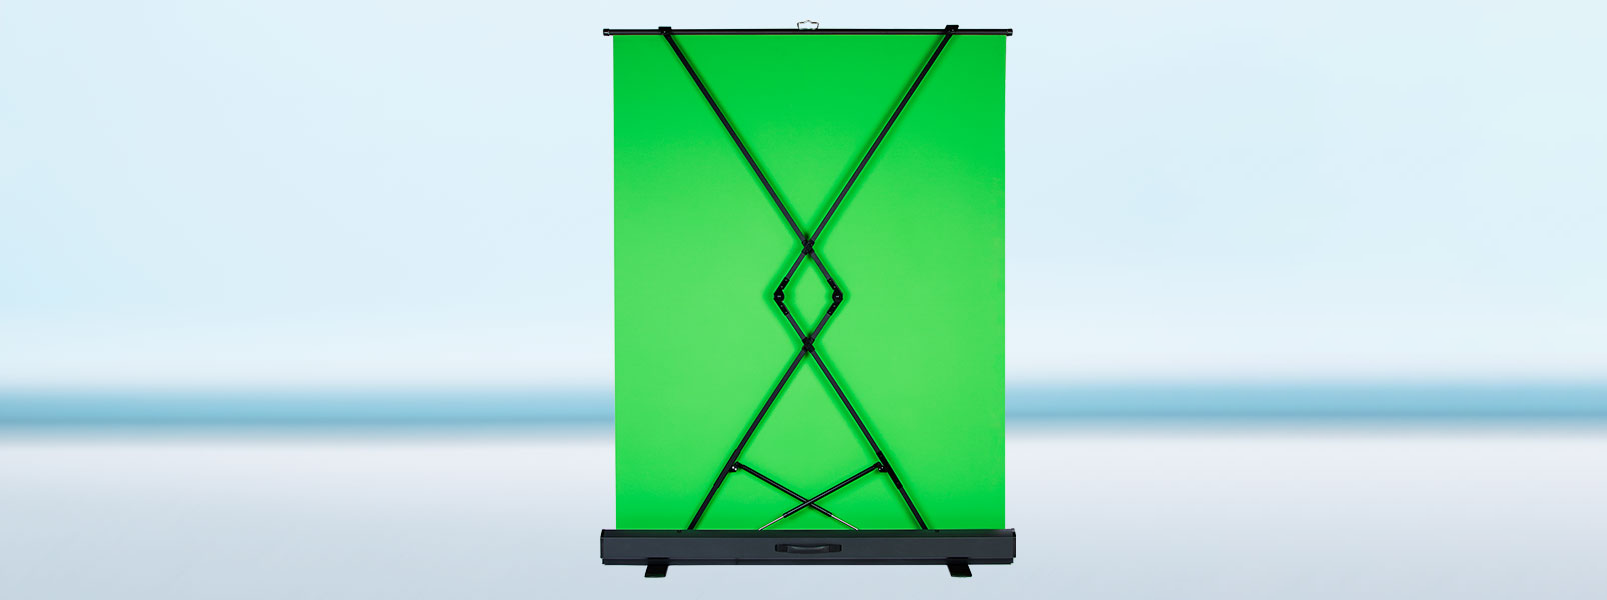 Green Screen Swit CK-150x48